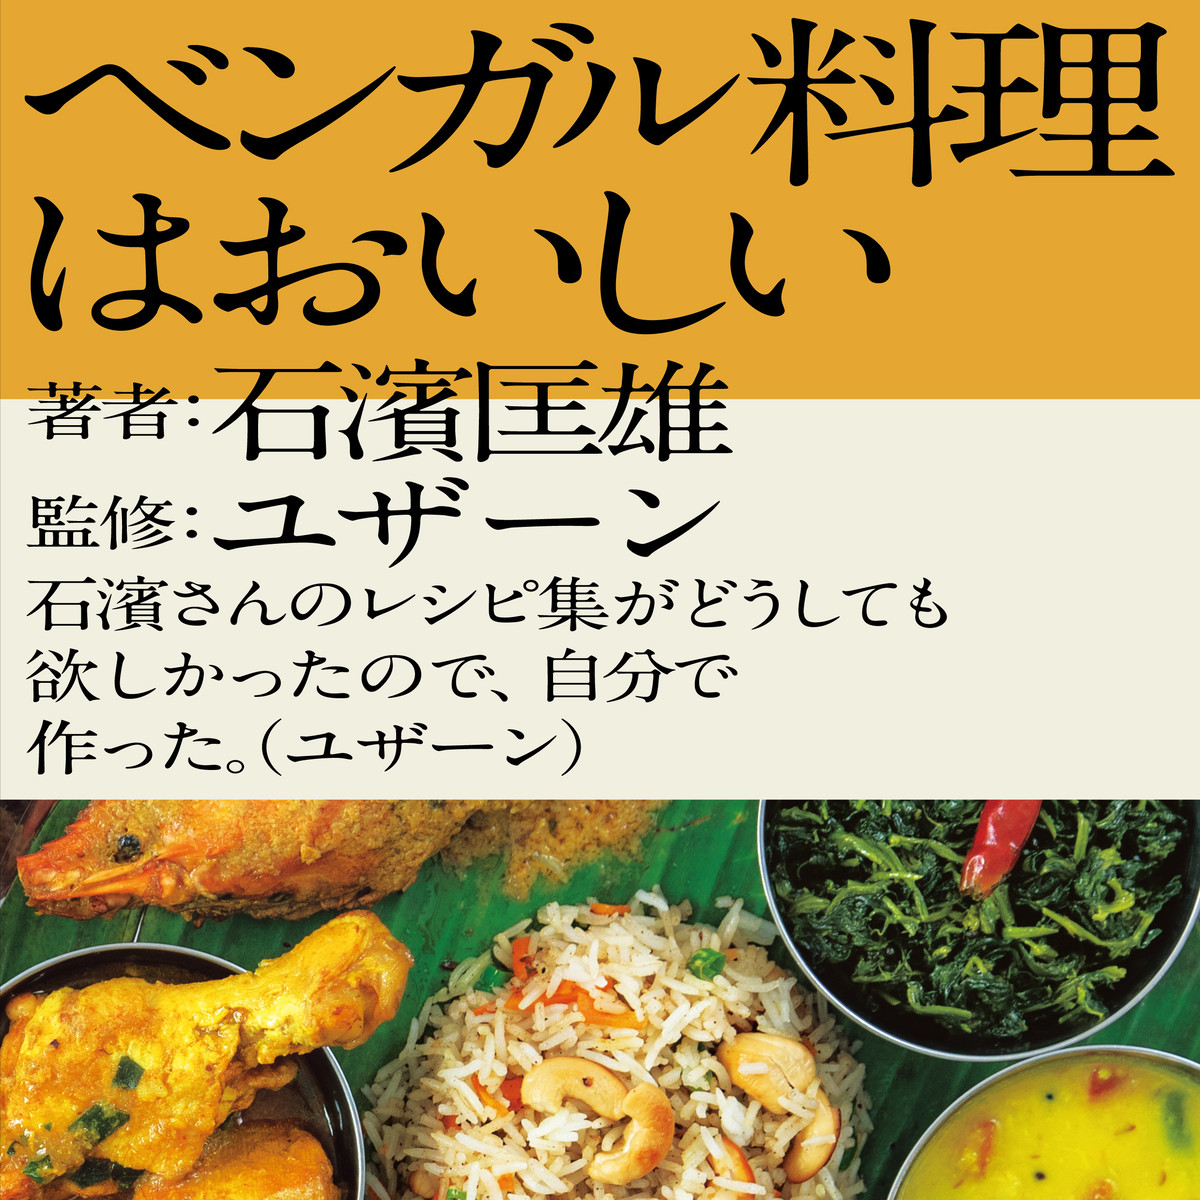 ベンガル料理はおいしい Numabooks出版部